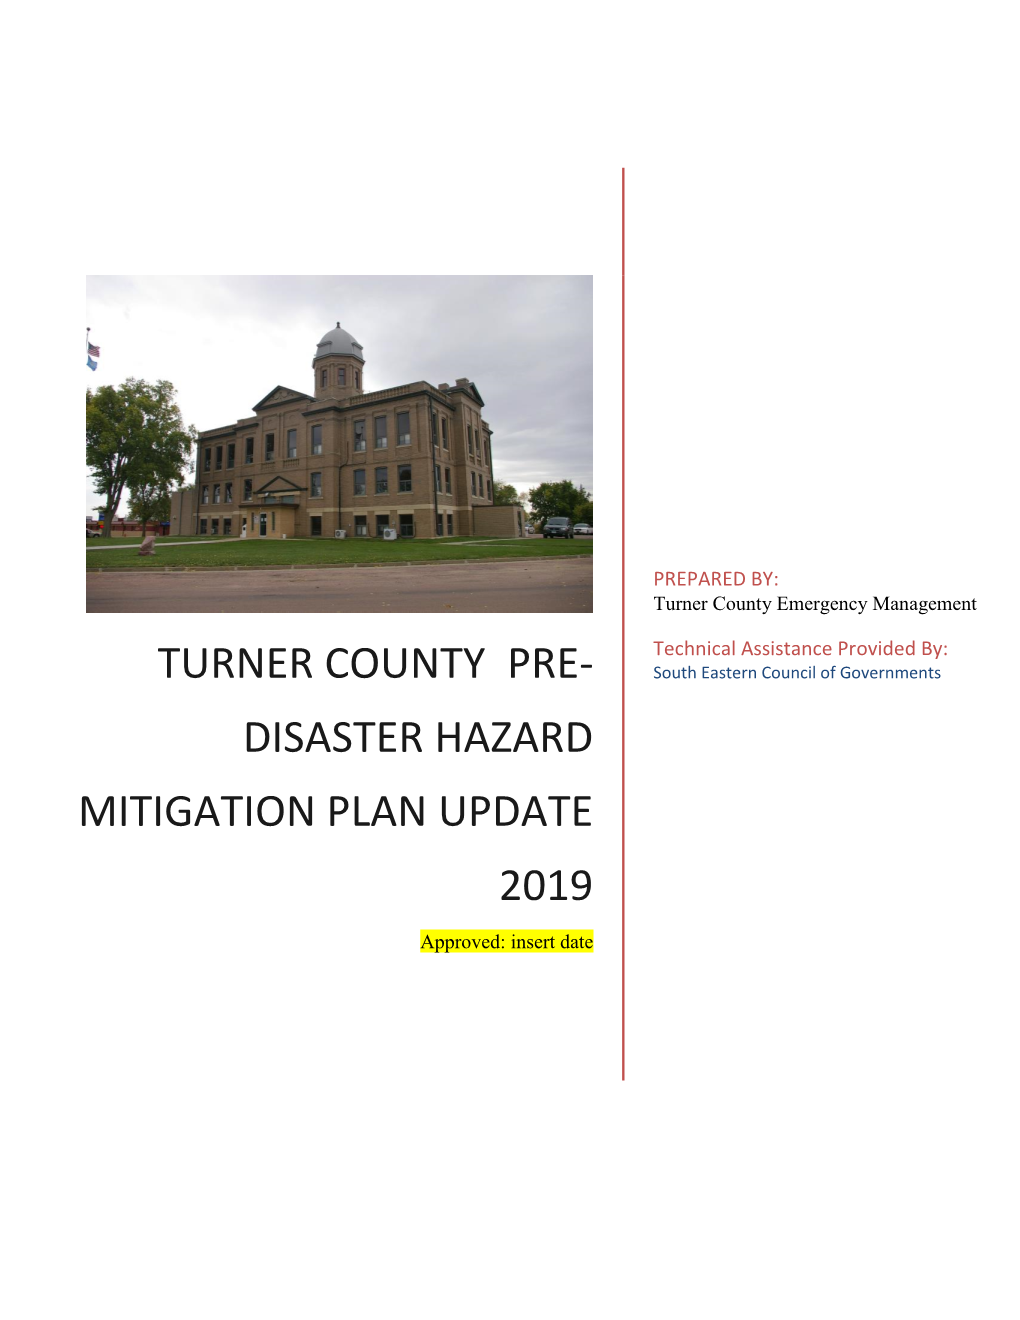 Turner County Pre-Disaster Hazard Mitigation Plan UPDATE 2019